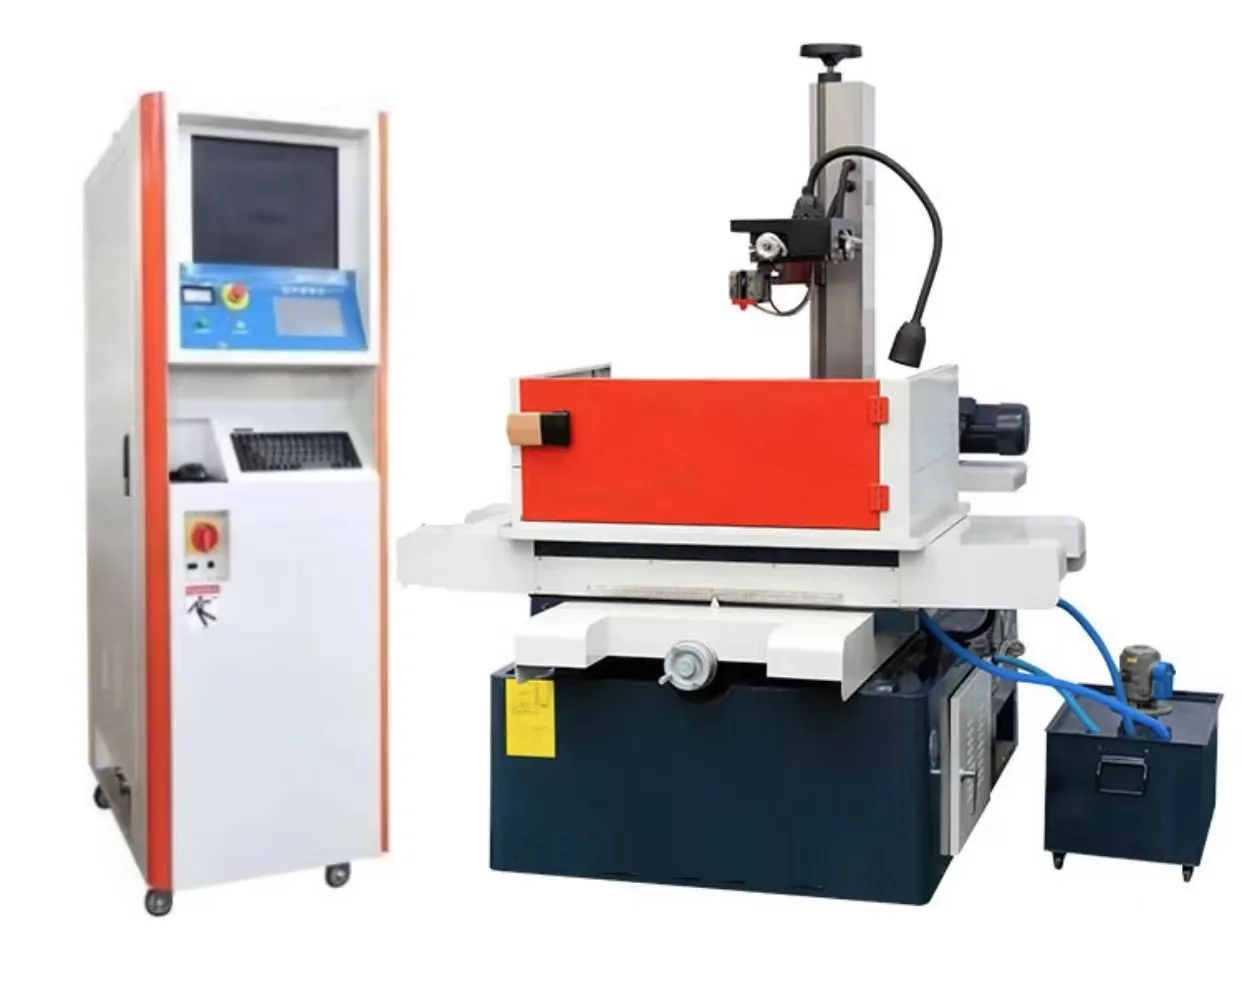 ماكينة تقطيع أسلاك CNC، DK7735 بسعر رخيص وإمداد من المصنع، عالية السرعة EDM لقطع الأسلاك